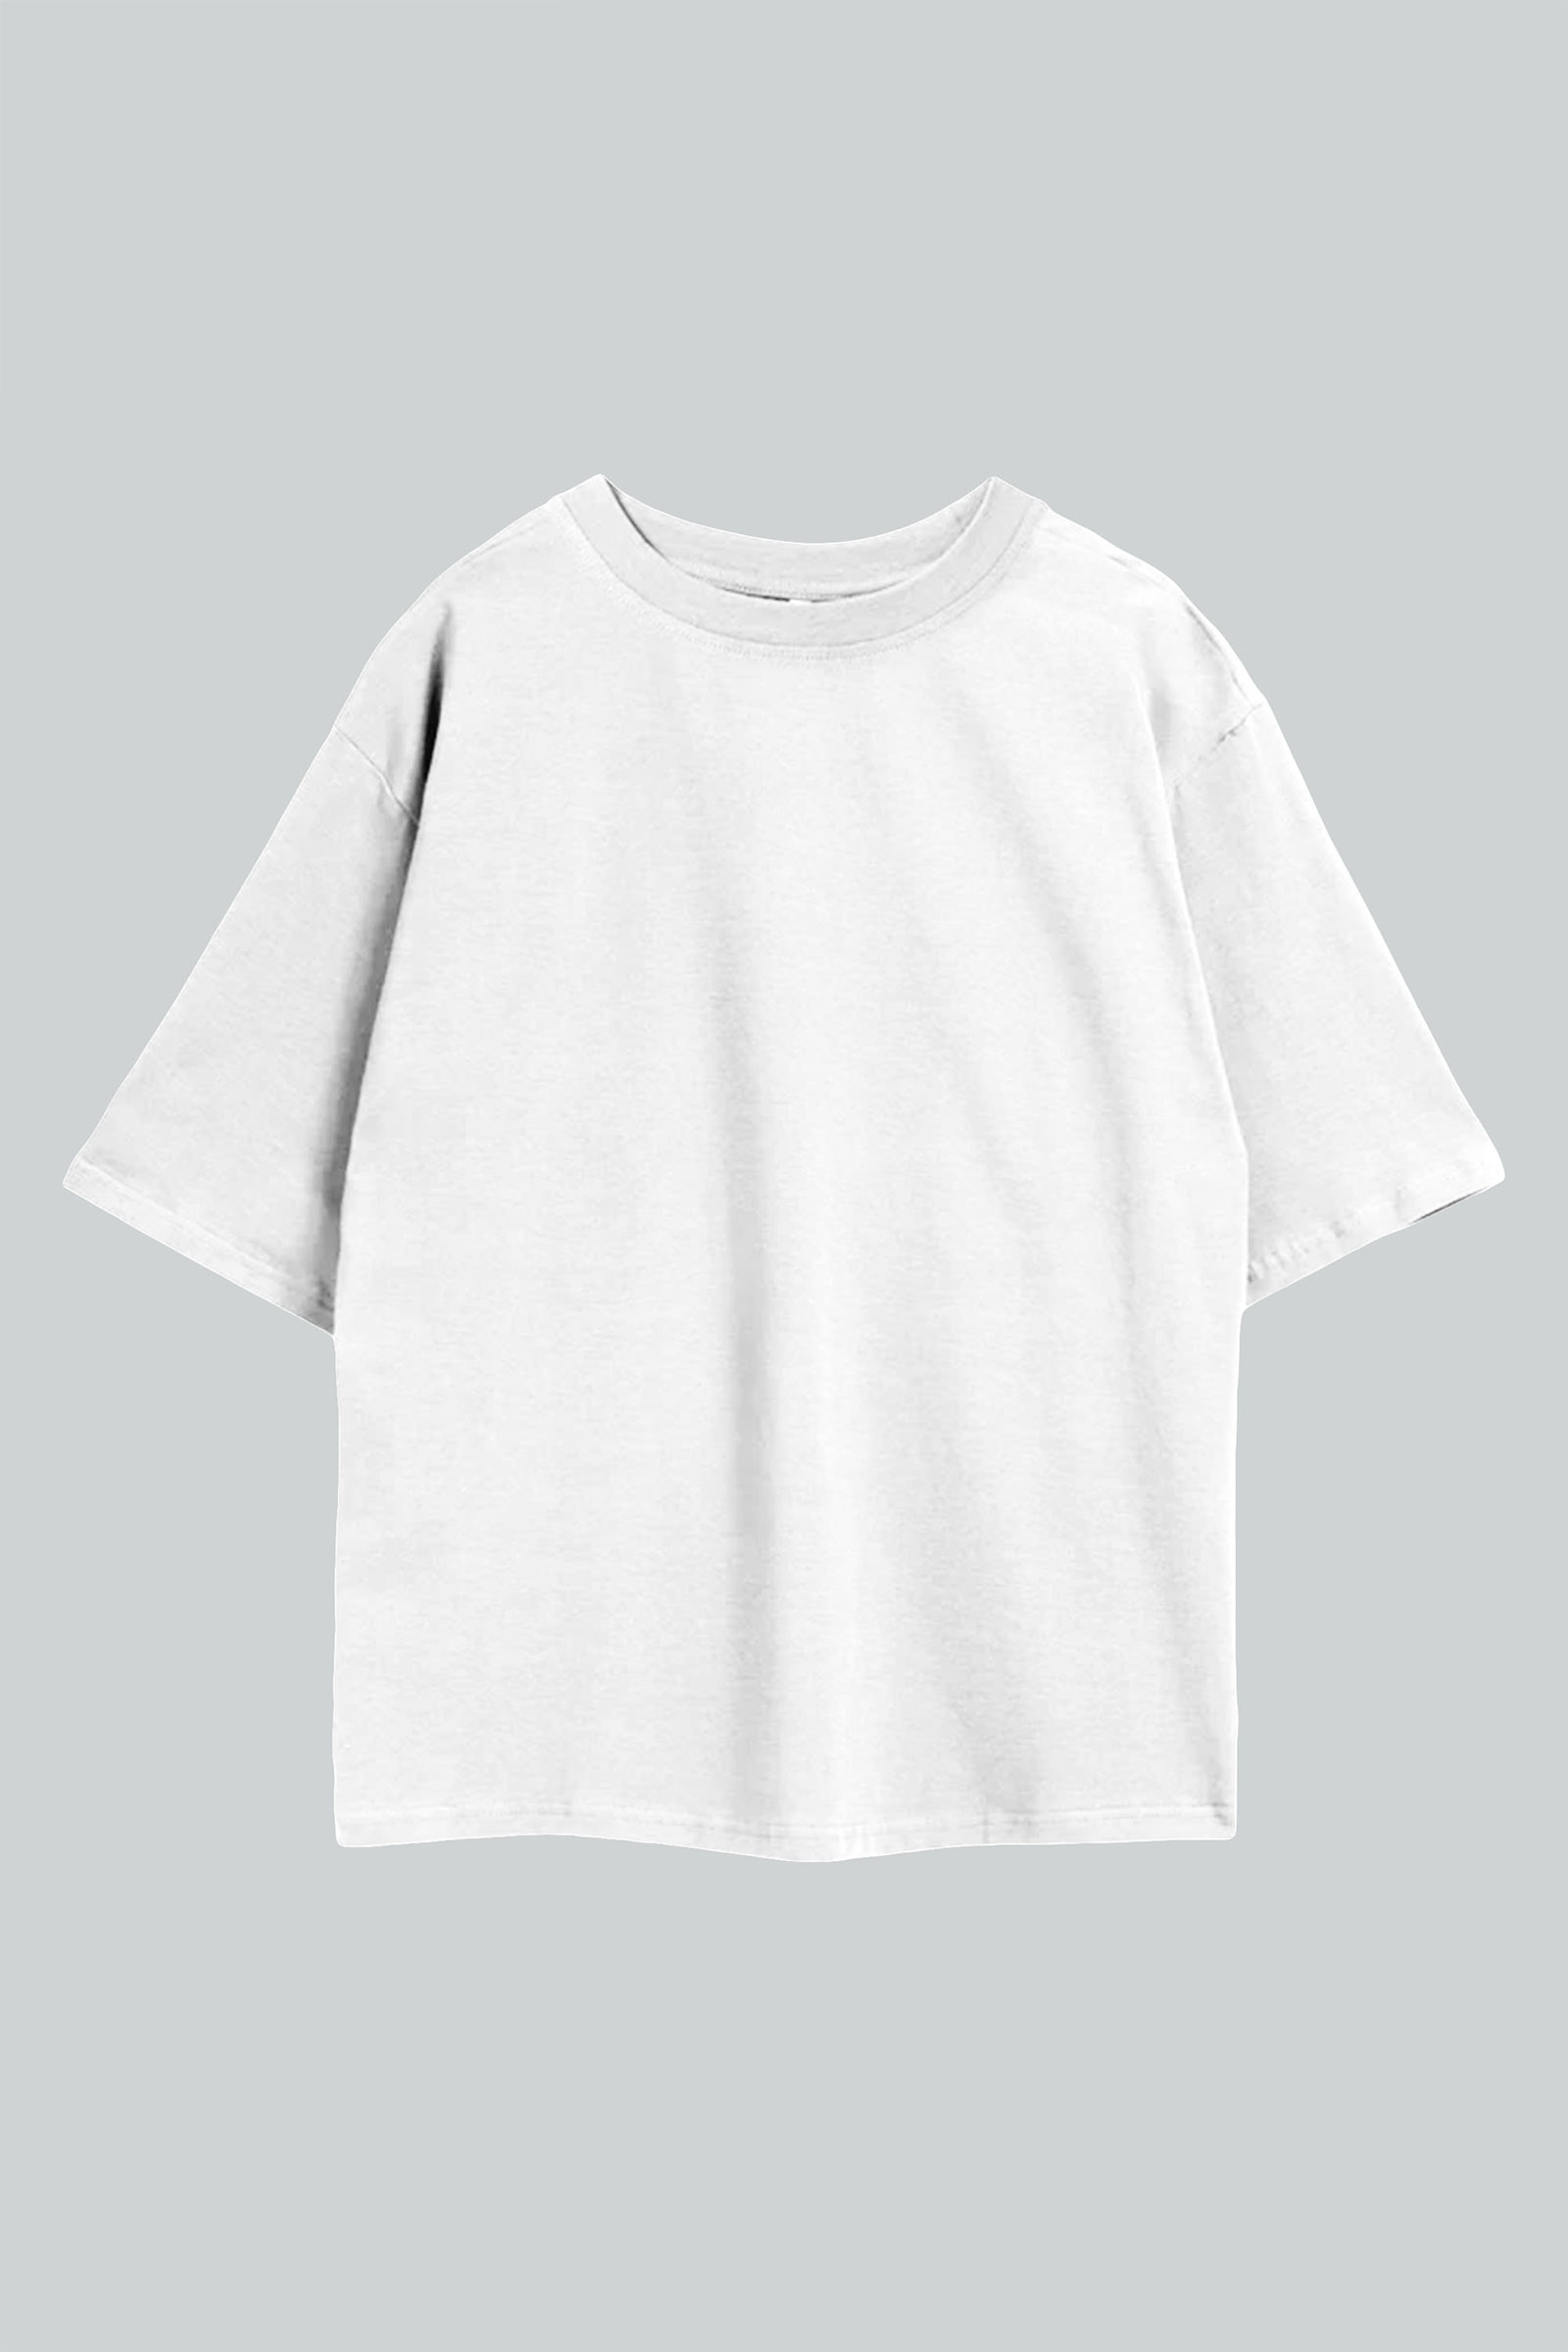 Basic White Oversize T-Shirt Front